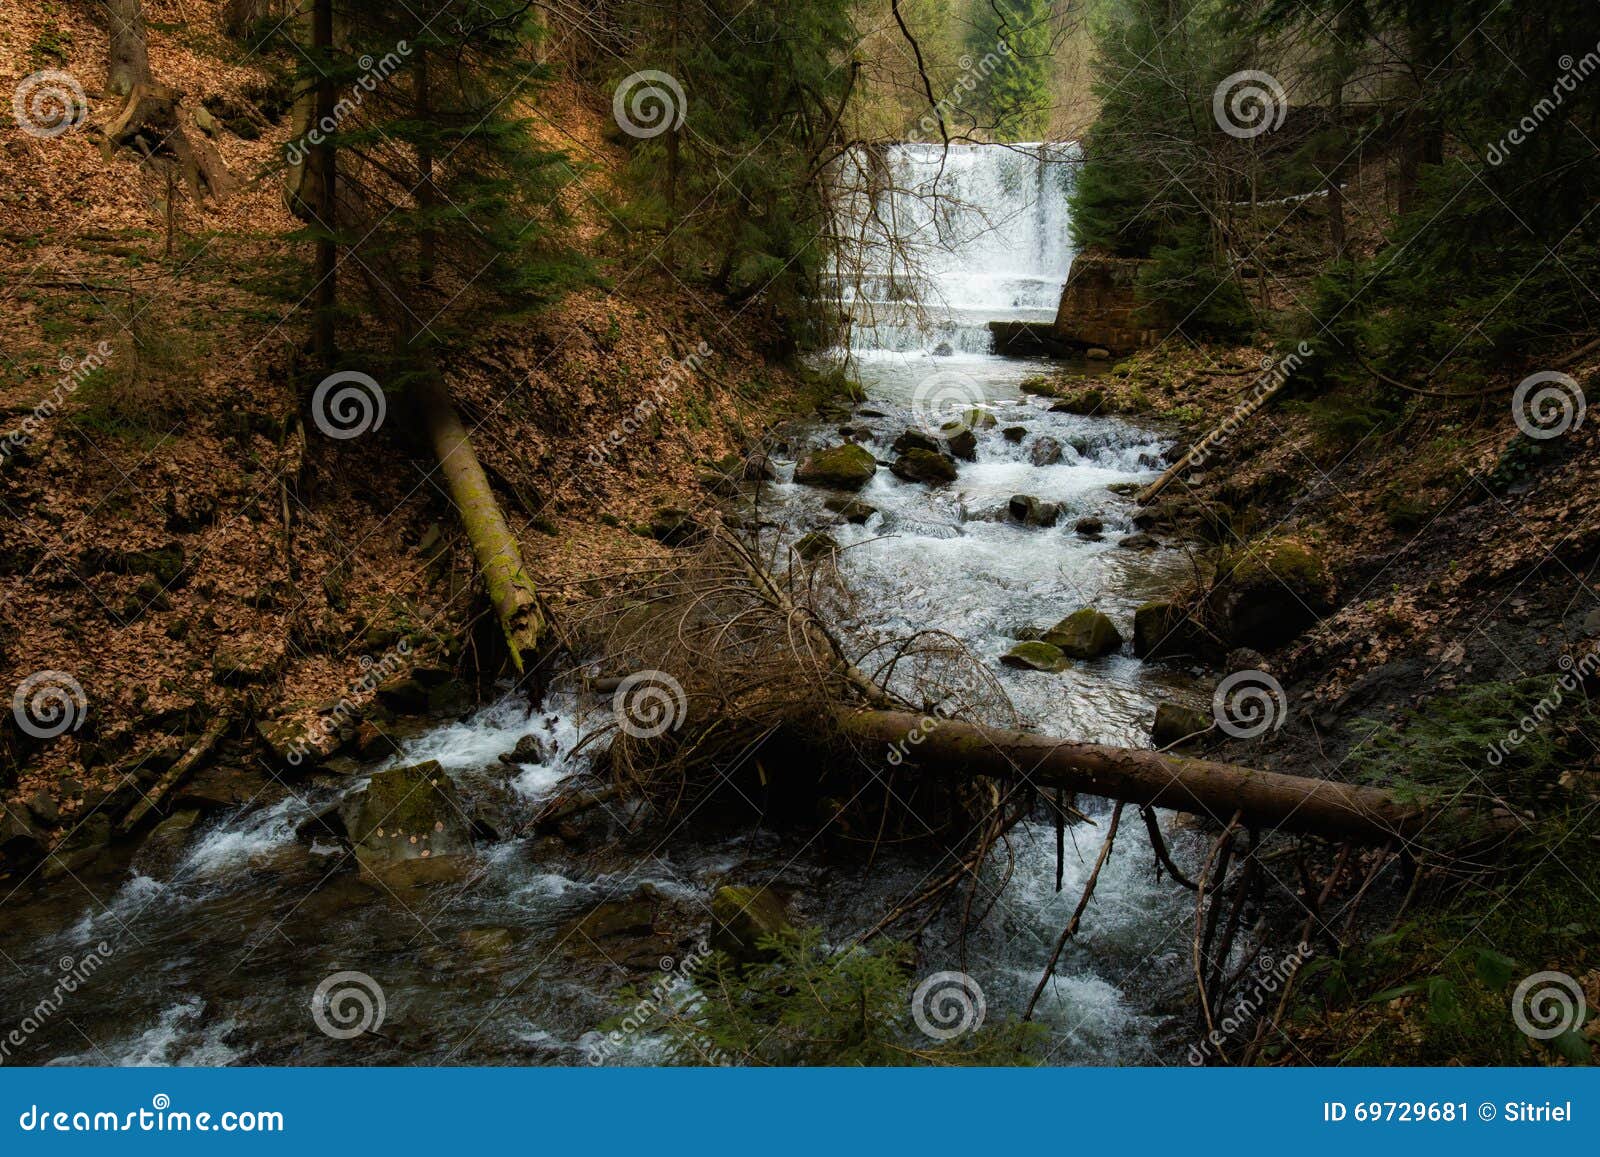 beautiful beskidy waterfall - rysianka mountain